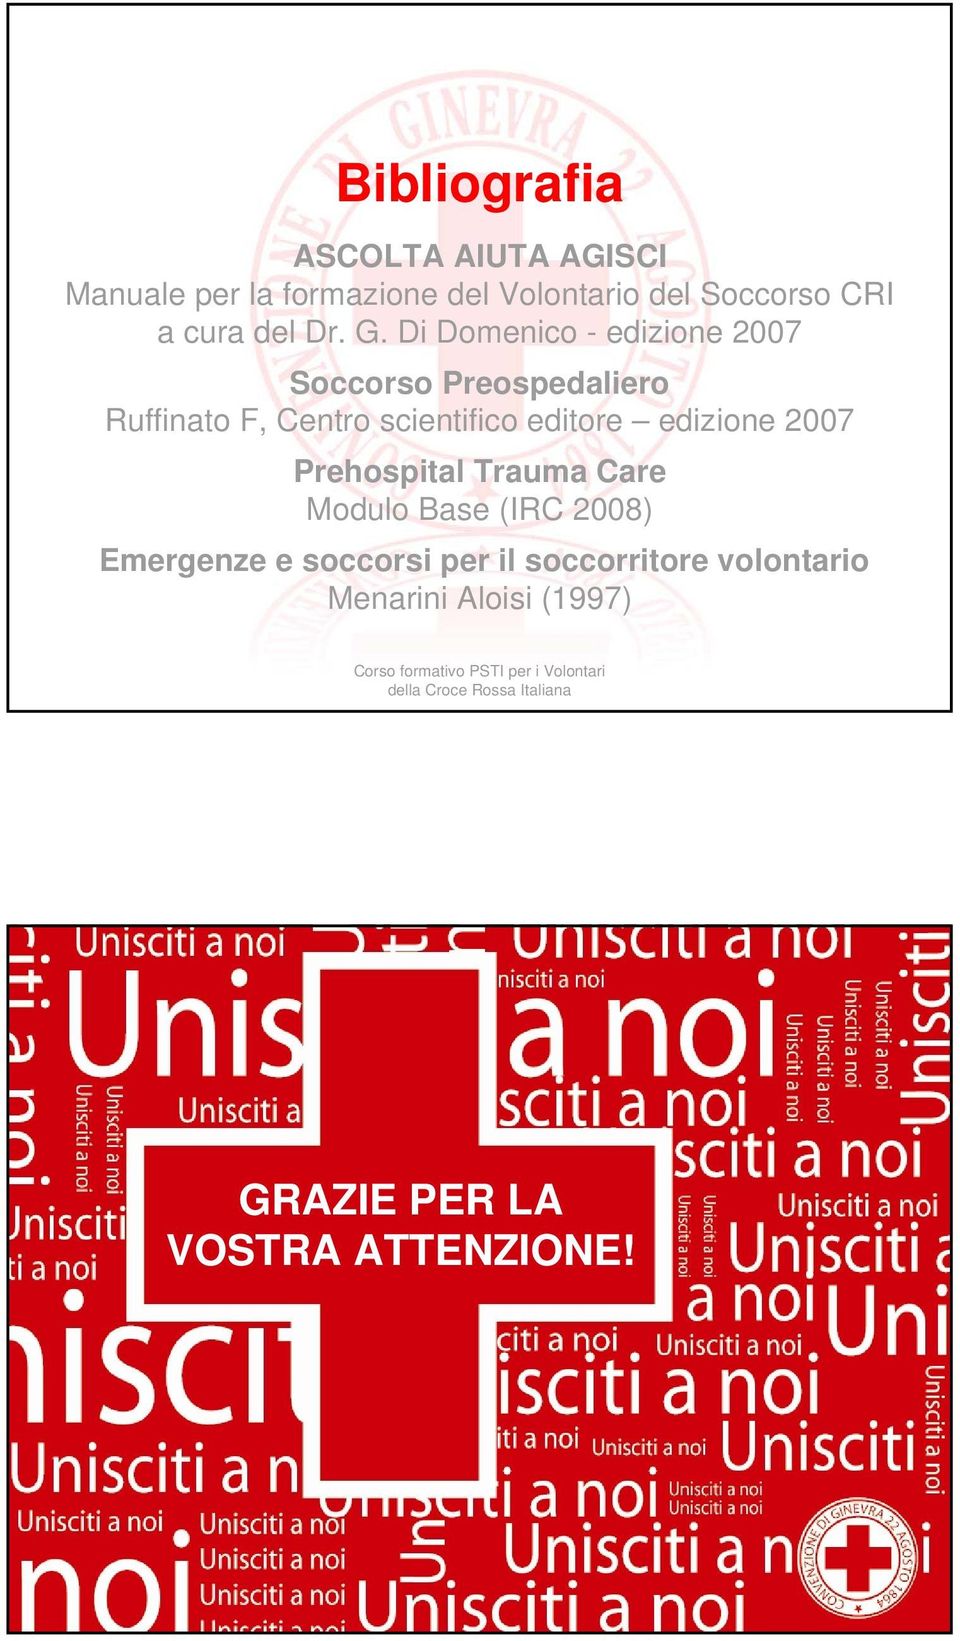 Di Domenico - edizione 2007 Soccorso Preospedaliero Ruffinato F, Centro scientifico editore